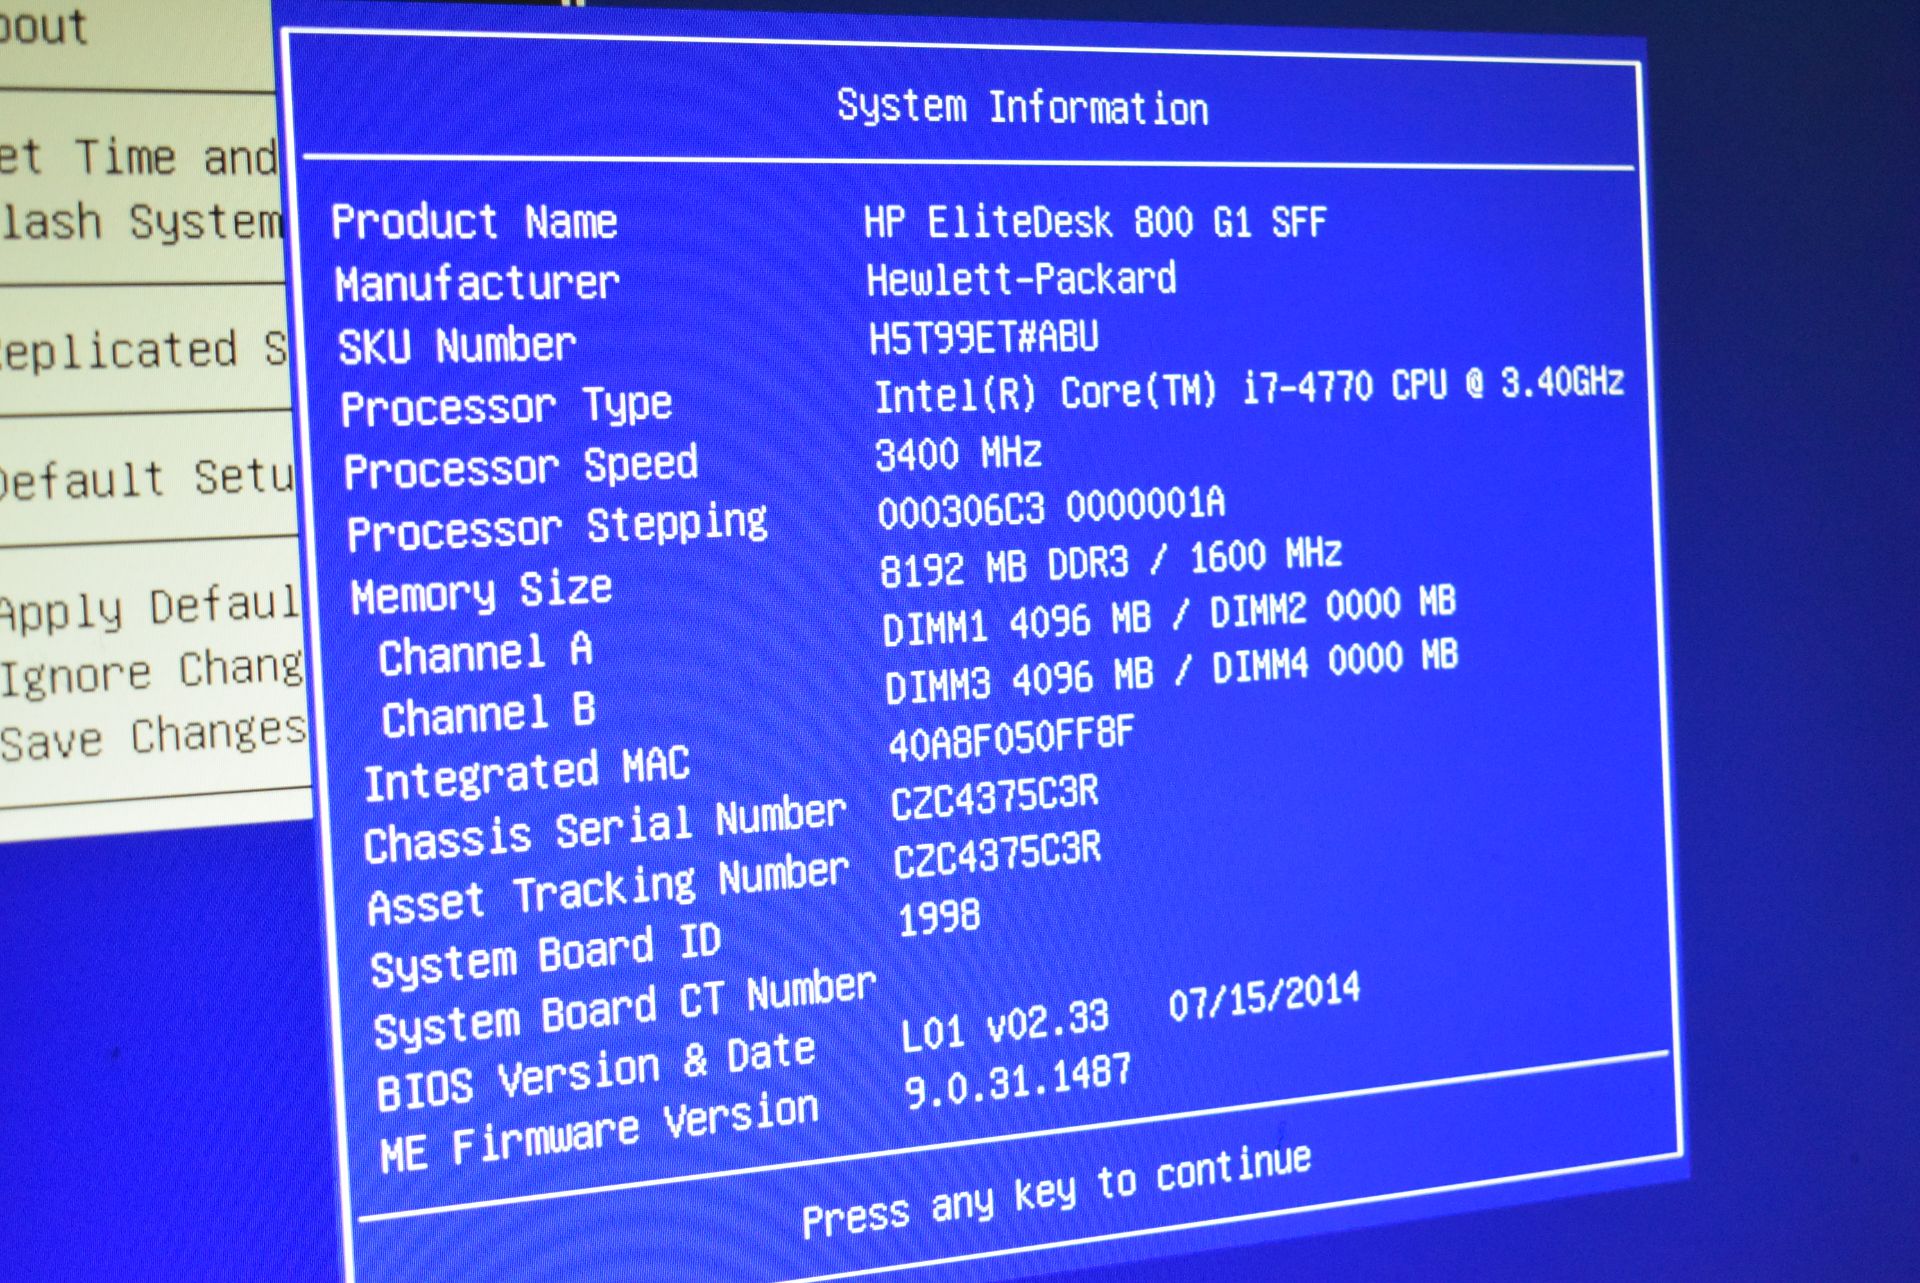 1 x HP Elite Desk 800 G1 SFF Desktop PC - Features an Intel i7-4770 3.4Ghz Quad Core Processor, - Image 6 of 7